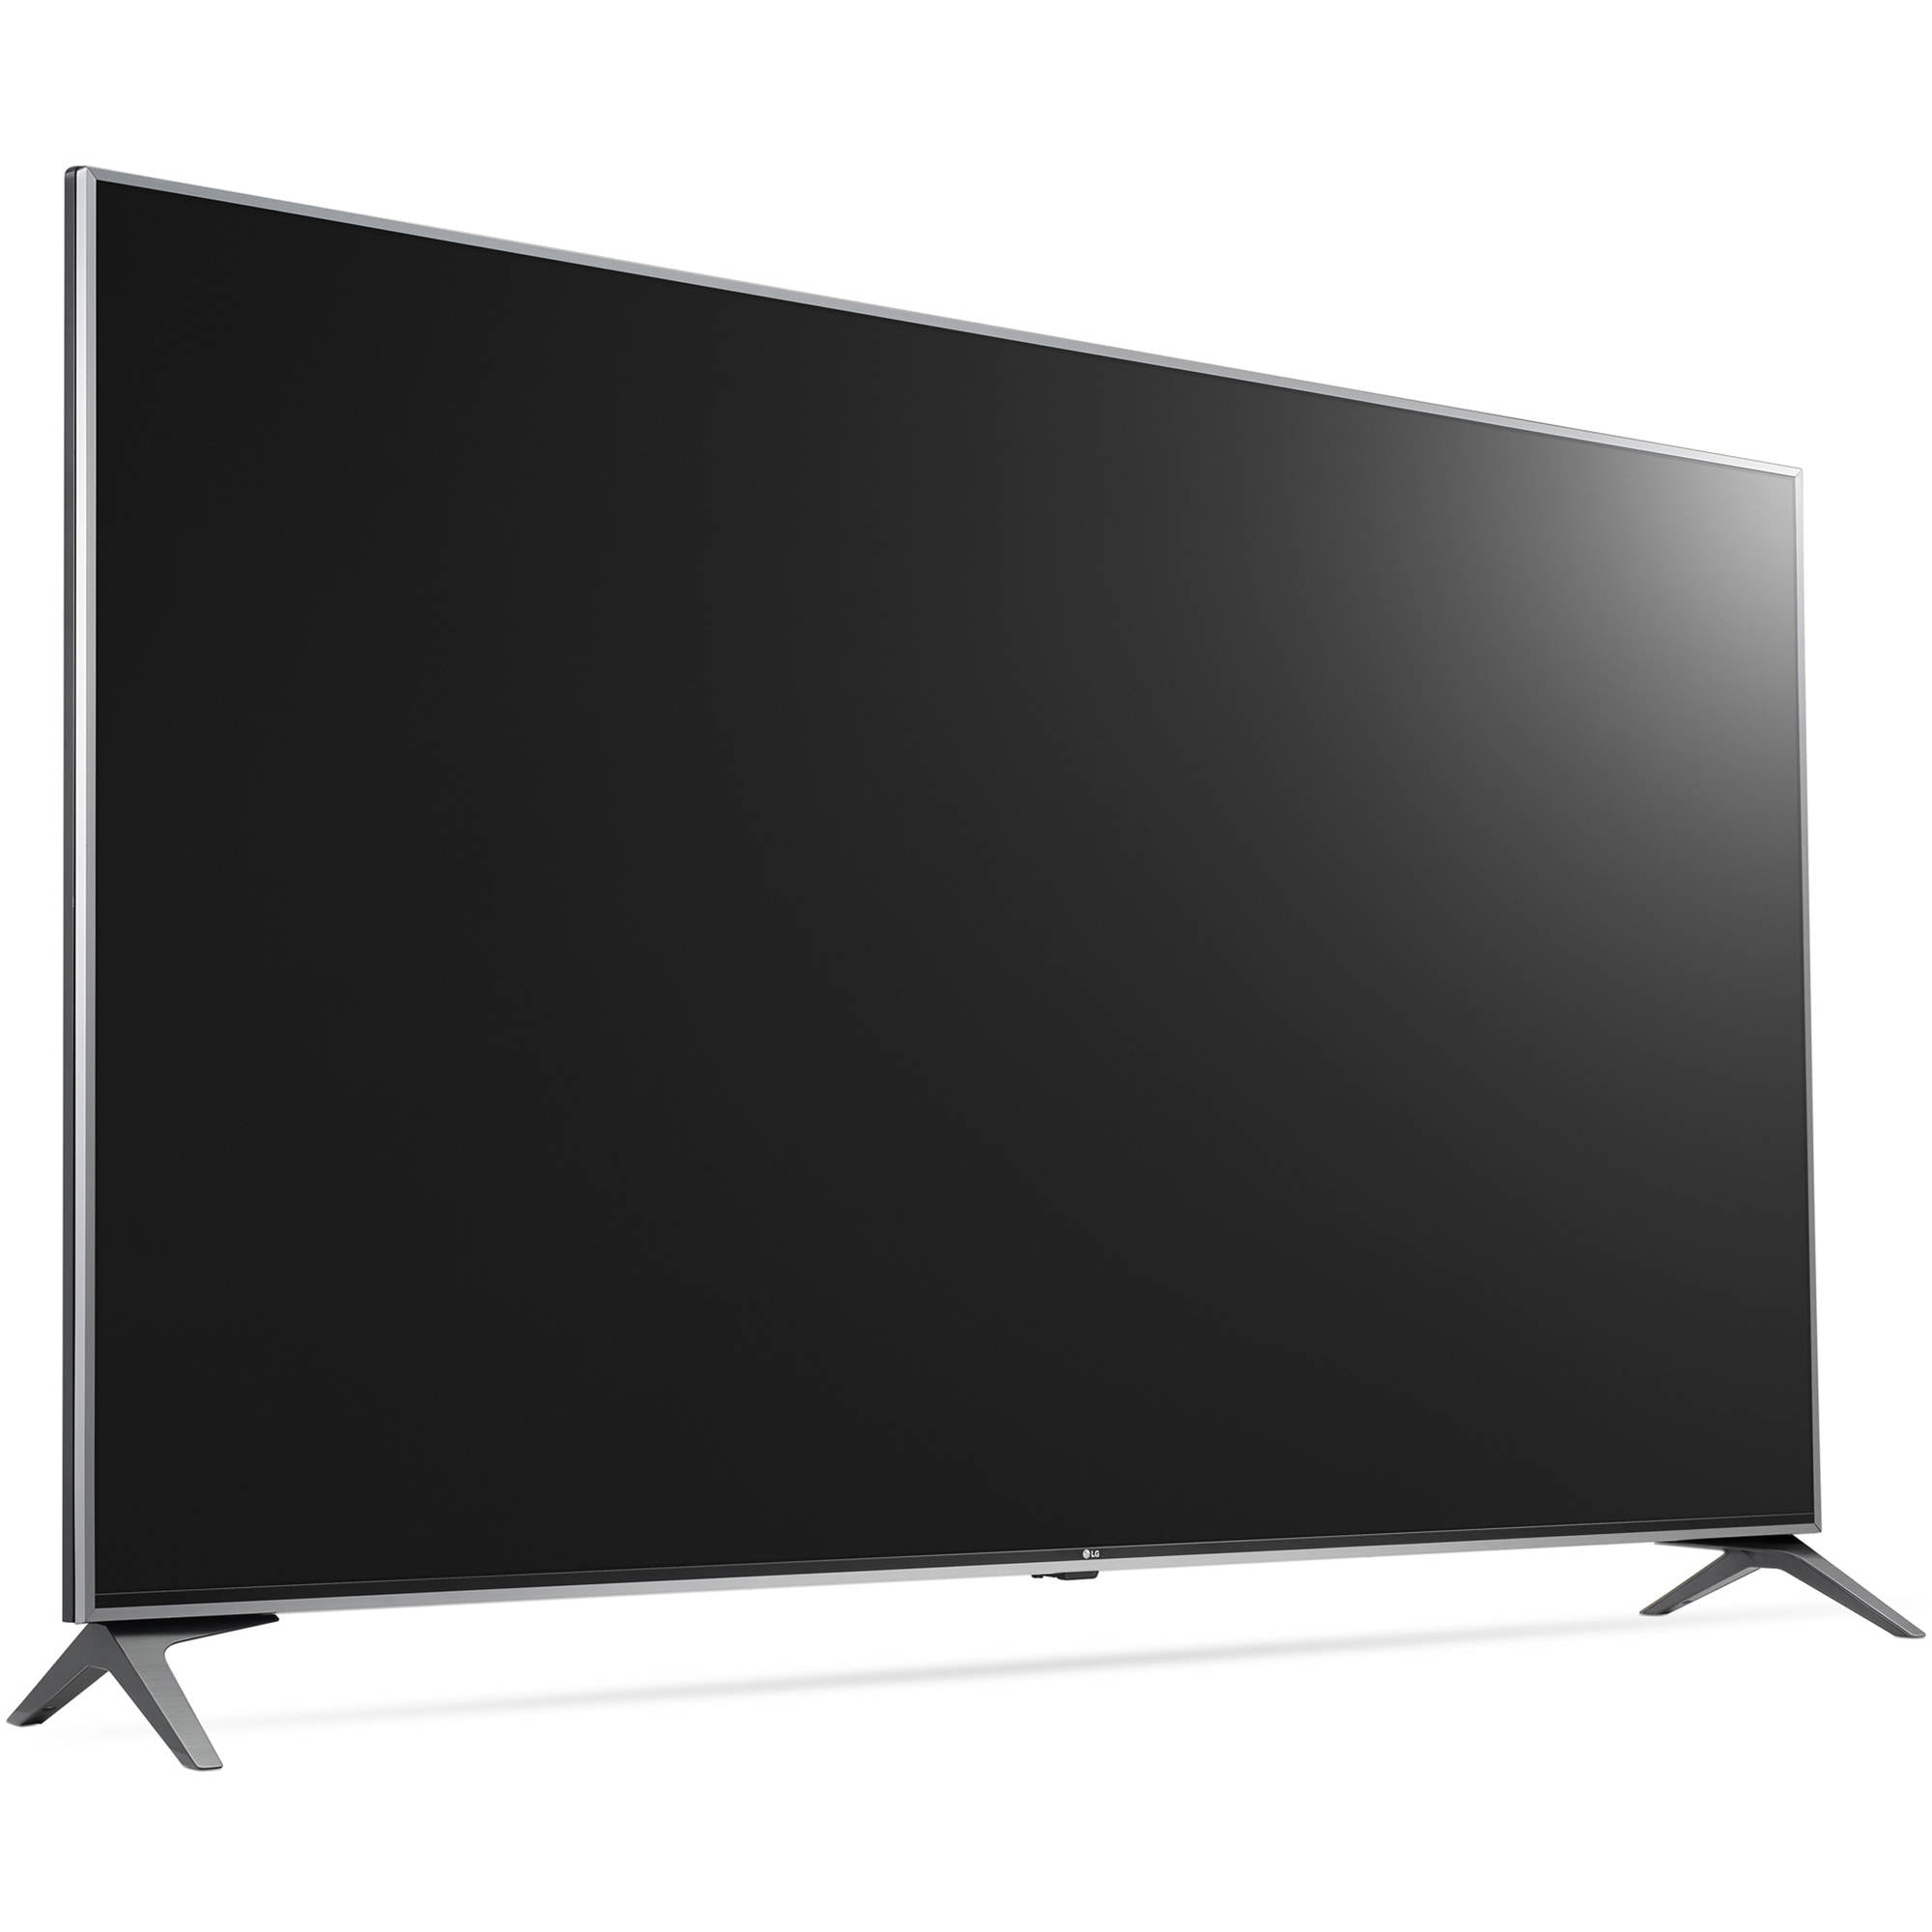 LG 60" Class UHDTV (2160p) LED-LCD TV (60UJ7700) -